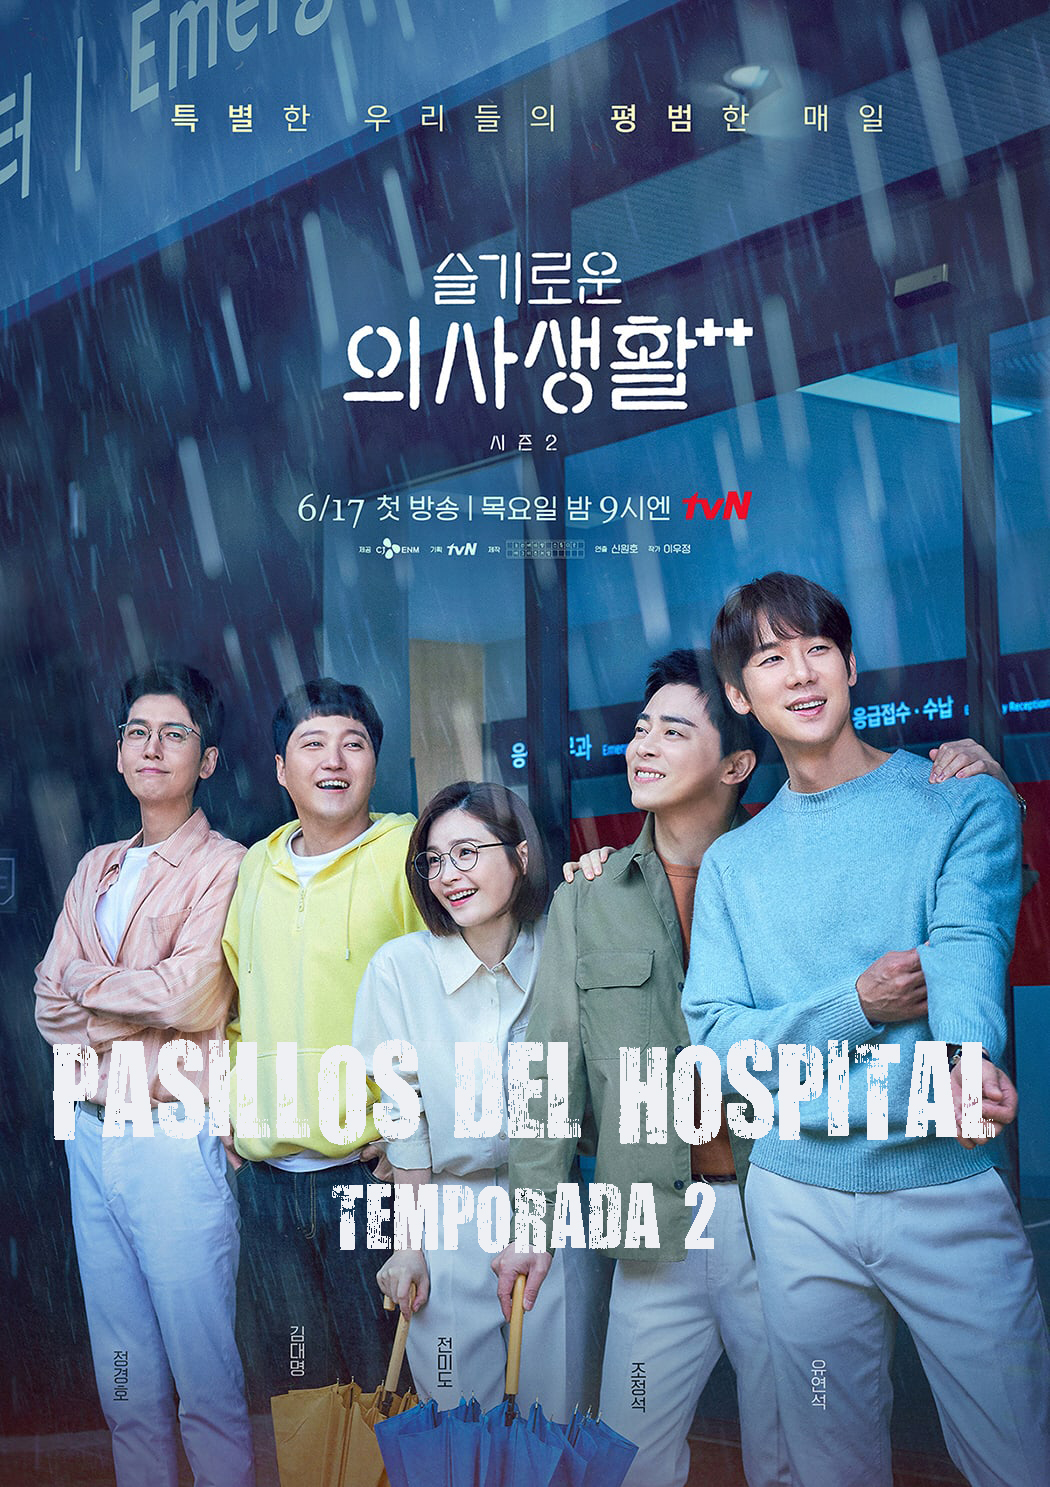 Pasillos de Hospital Temporada 2 (Dorama Latino) 1080p Descargar